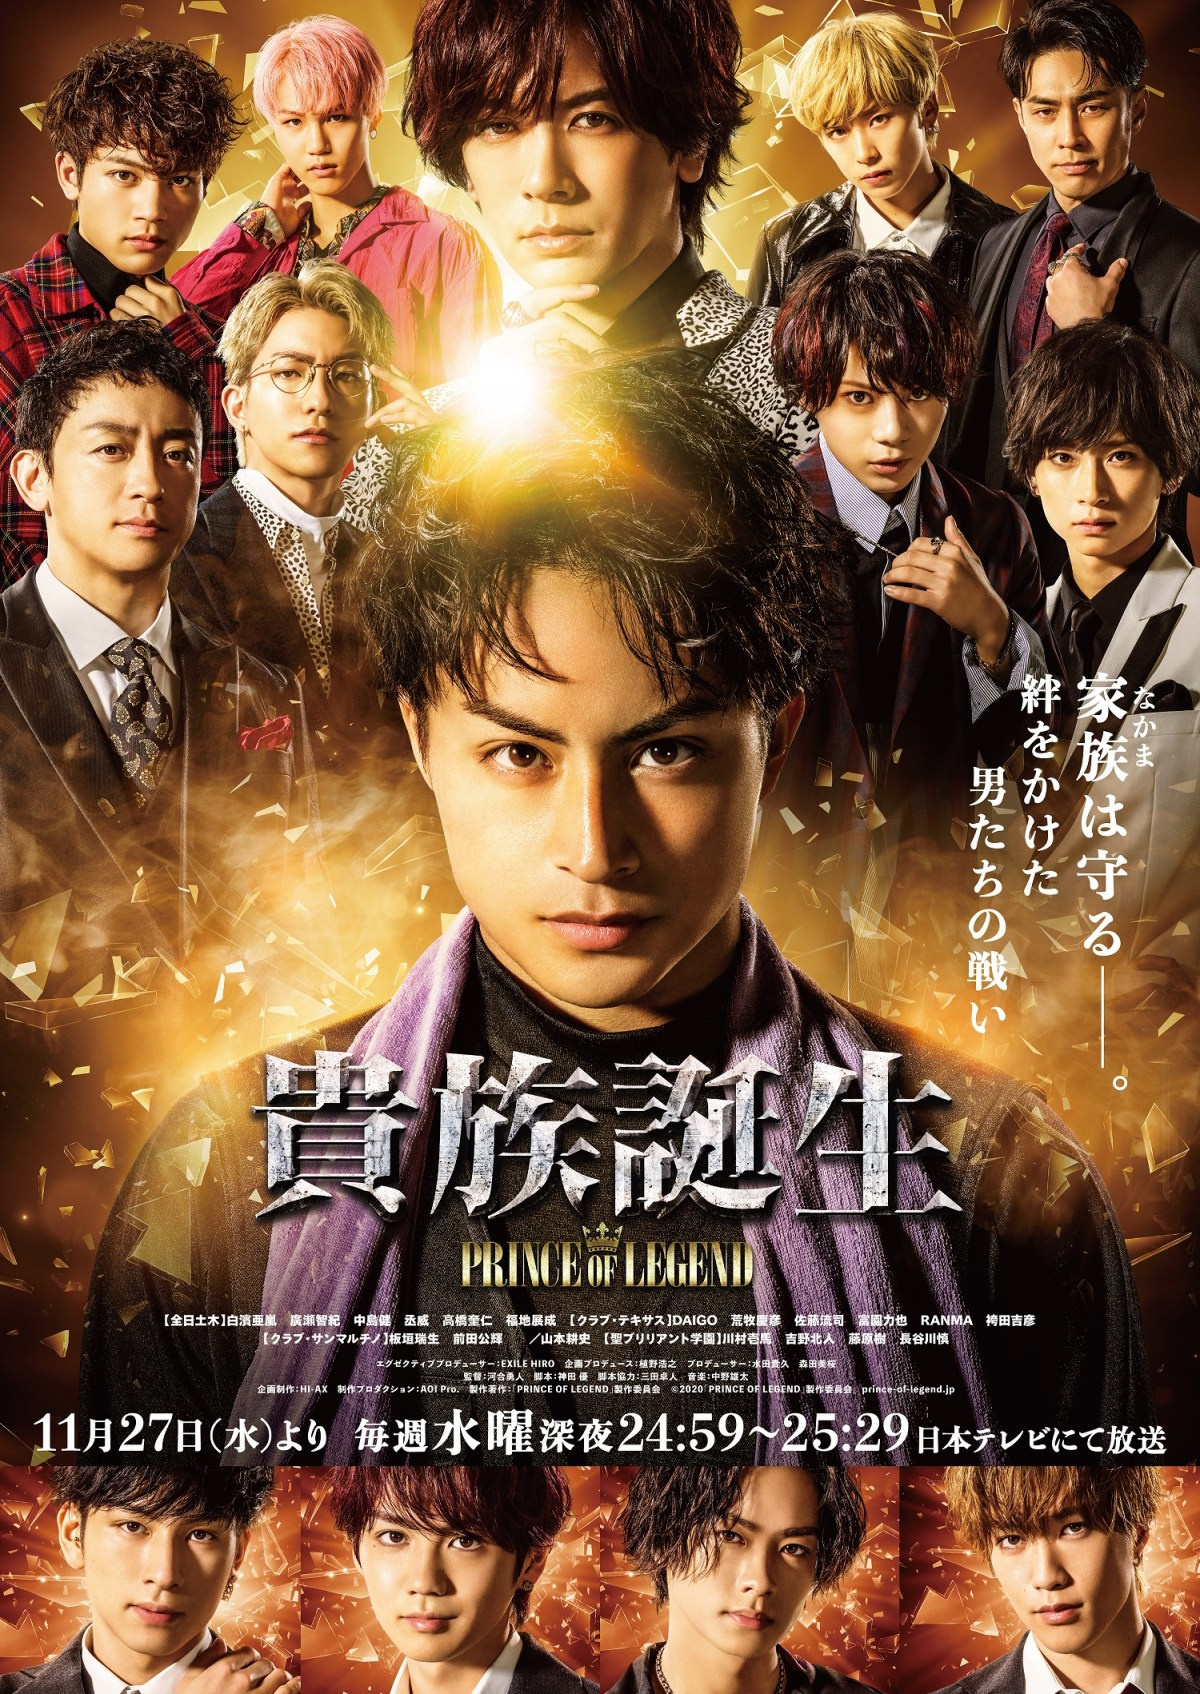 Princeoflegend ドラマ 映画で新章へ 白濱亜嵐を主演にホストが支配するナイトリングが舞台 Oricon News